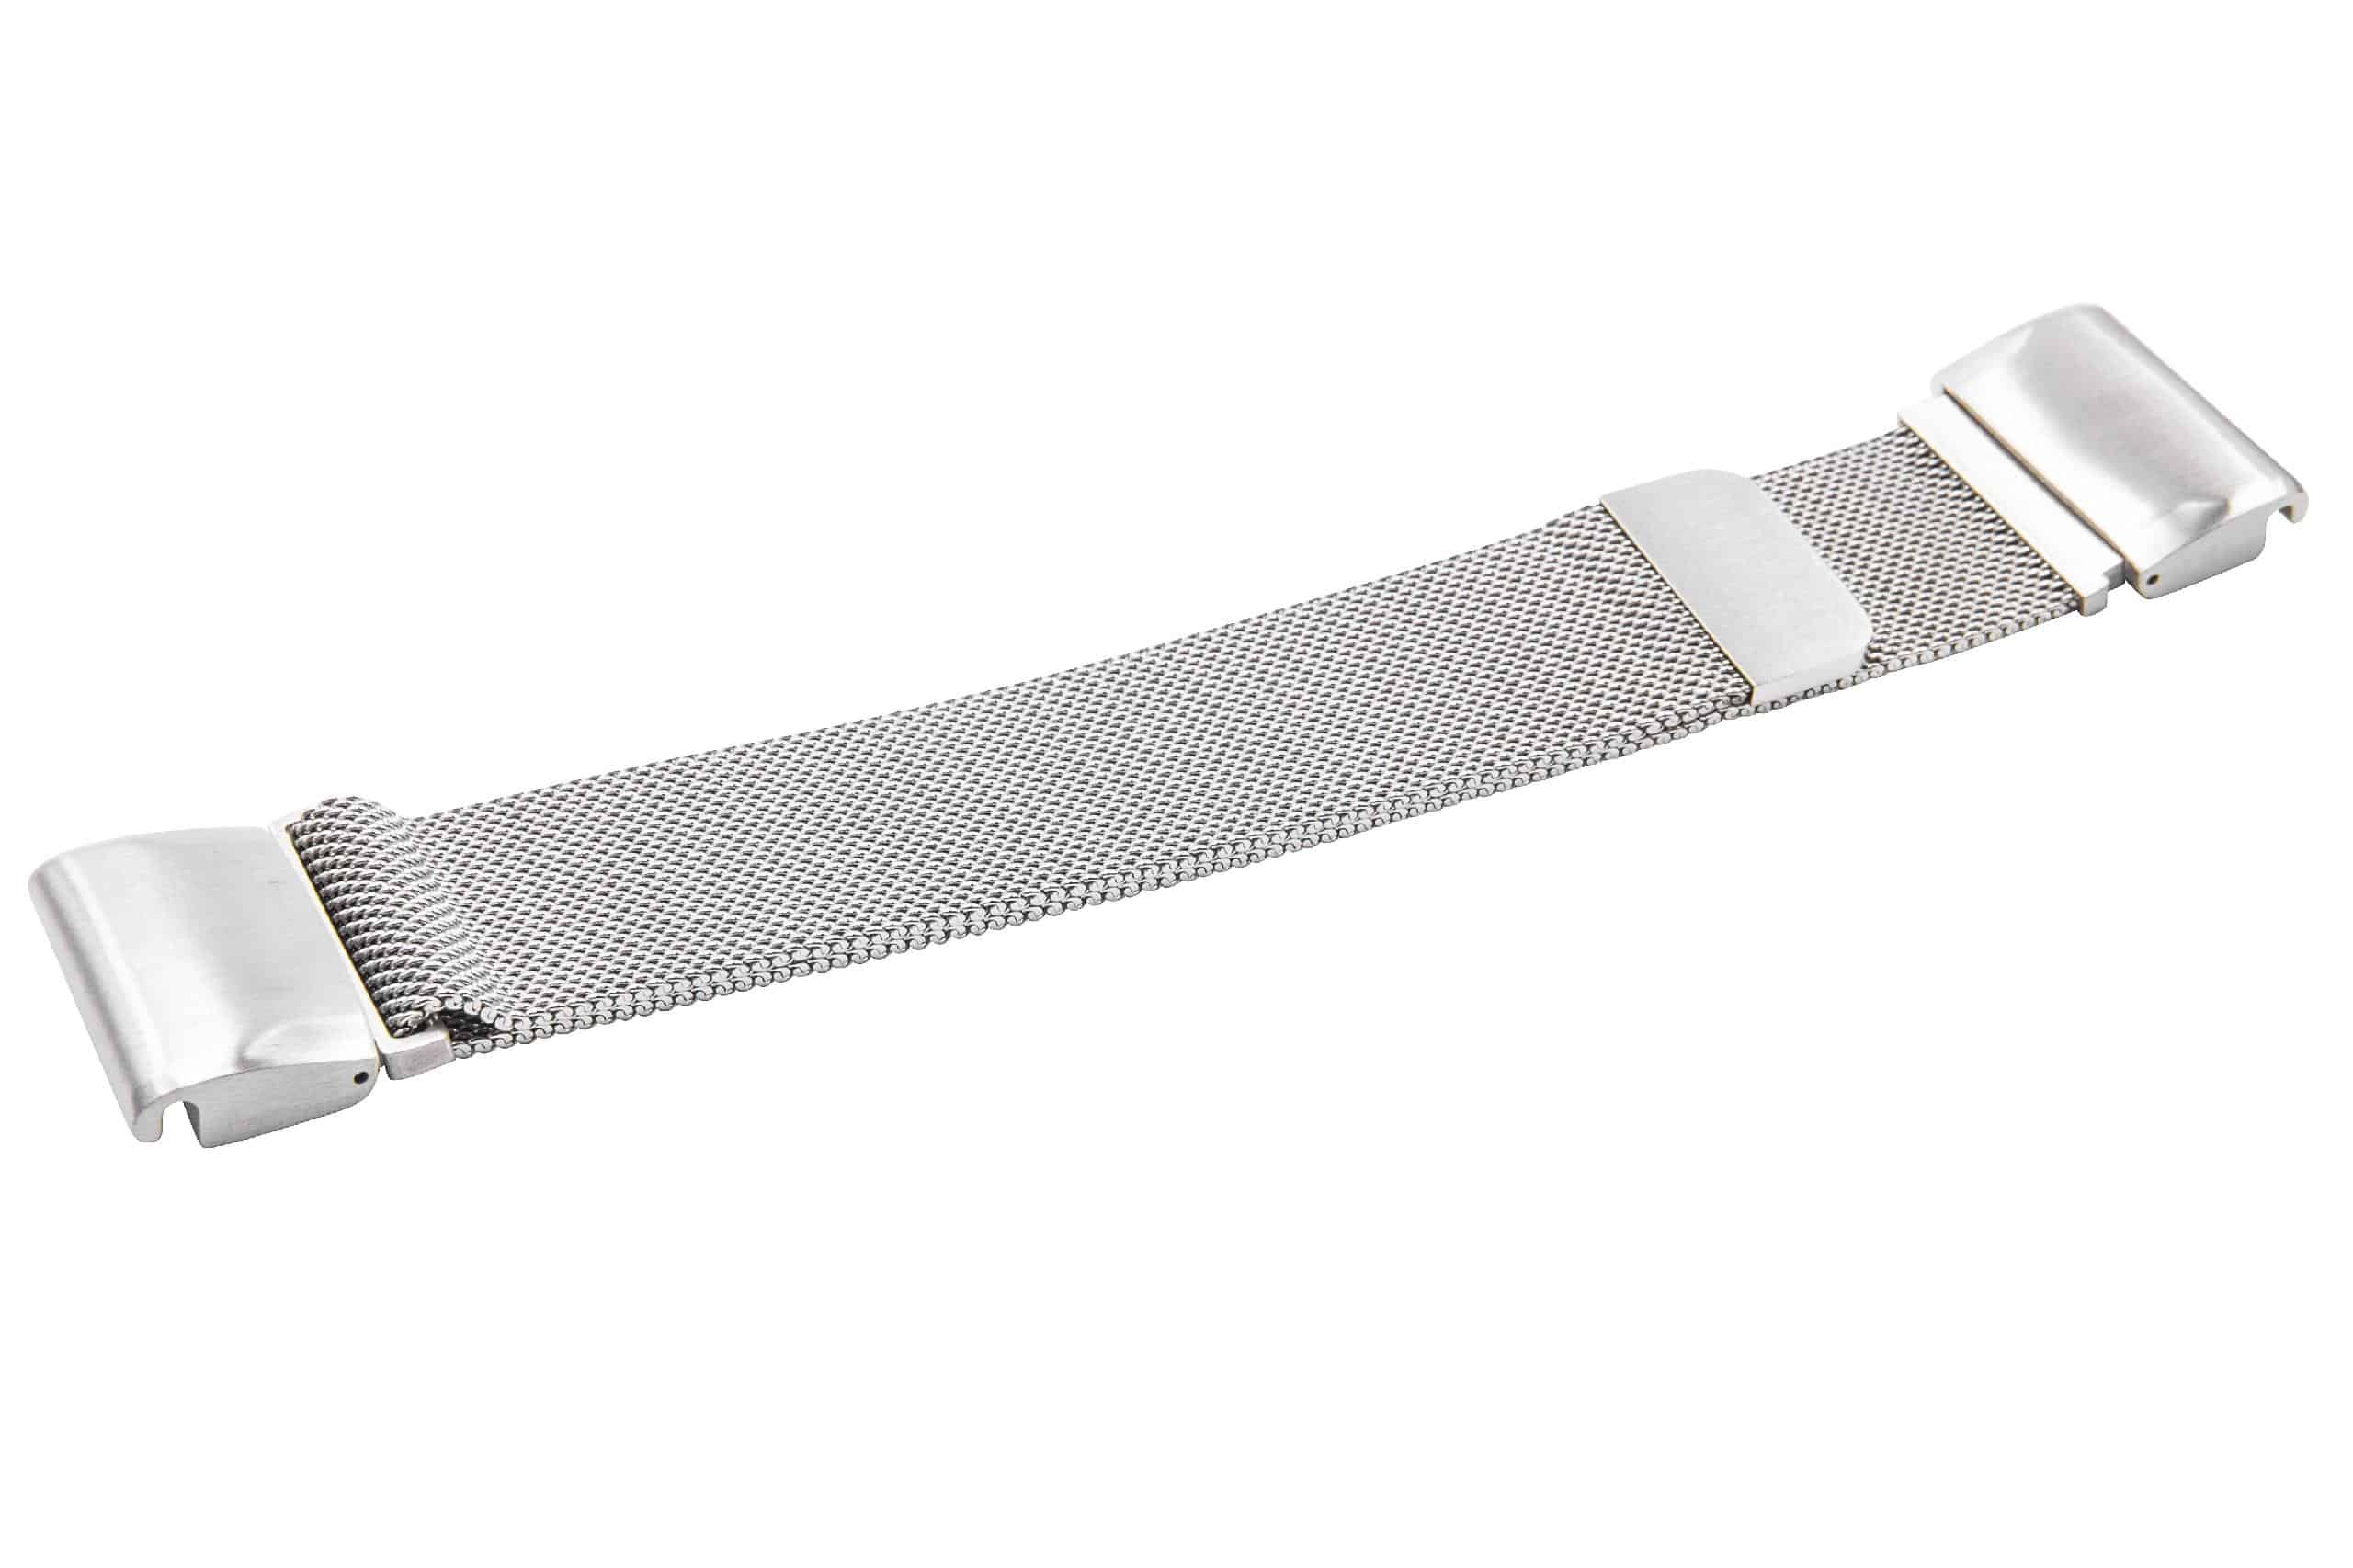 Pasek do smartwatch Garmin Descent - obwód nadgarstka do 265 mm , stal nierdzewna, srebrny